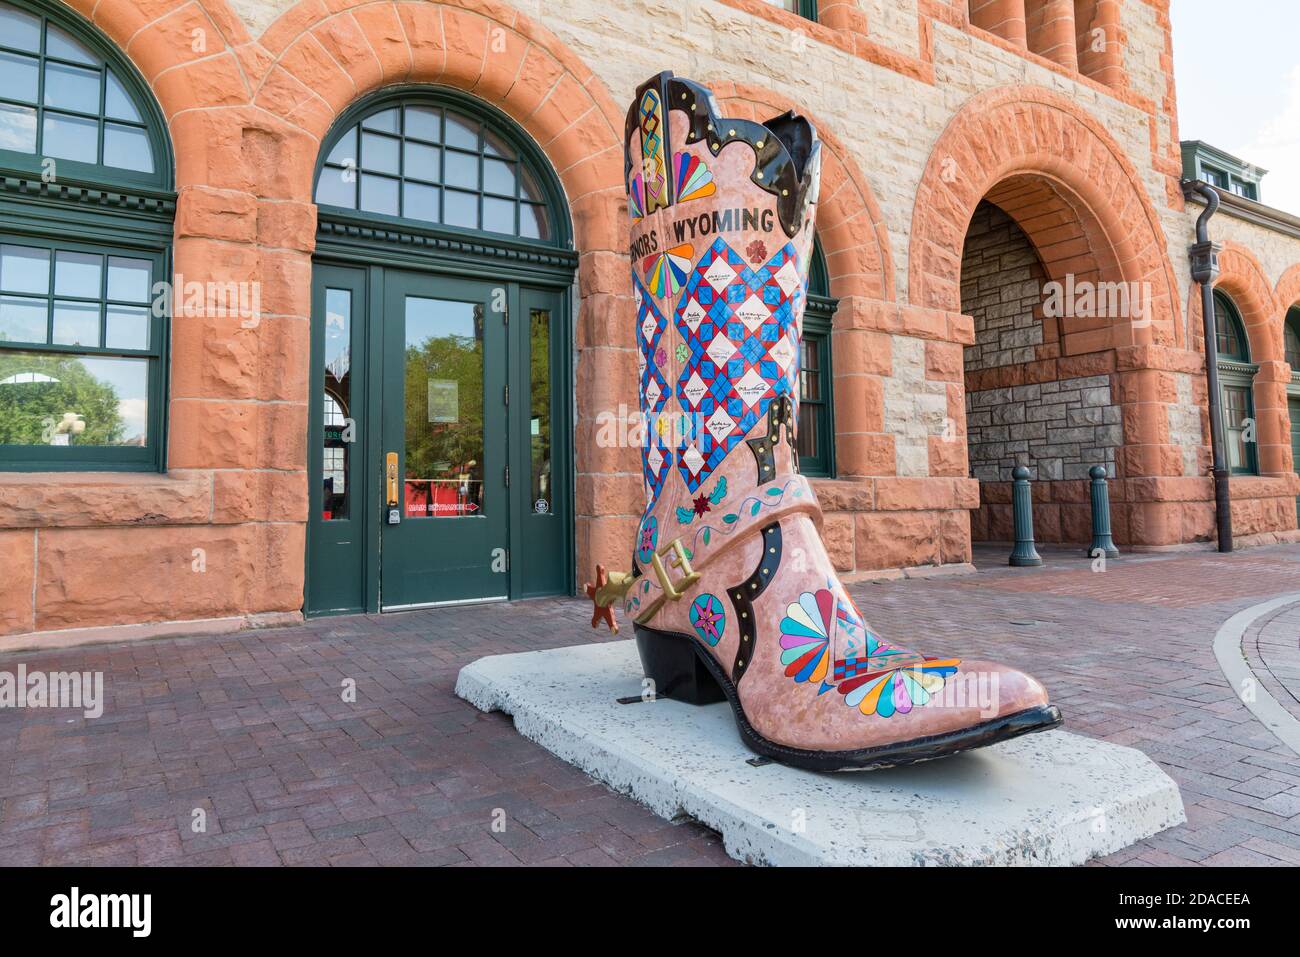 Cheyenne, Wyoming - 8 agosto 2020: Grande scultura d'arte di stivali da cowboy fuori della storica stazione ferroviaria Union Pacific Depot a Cheyenne, Wyoming Foto Stock